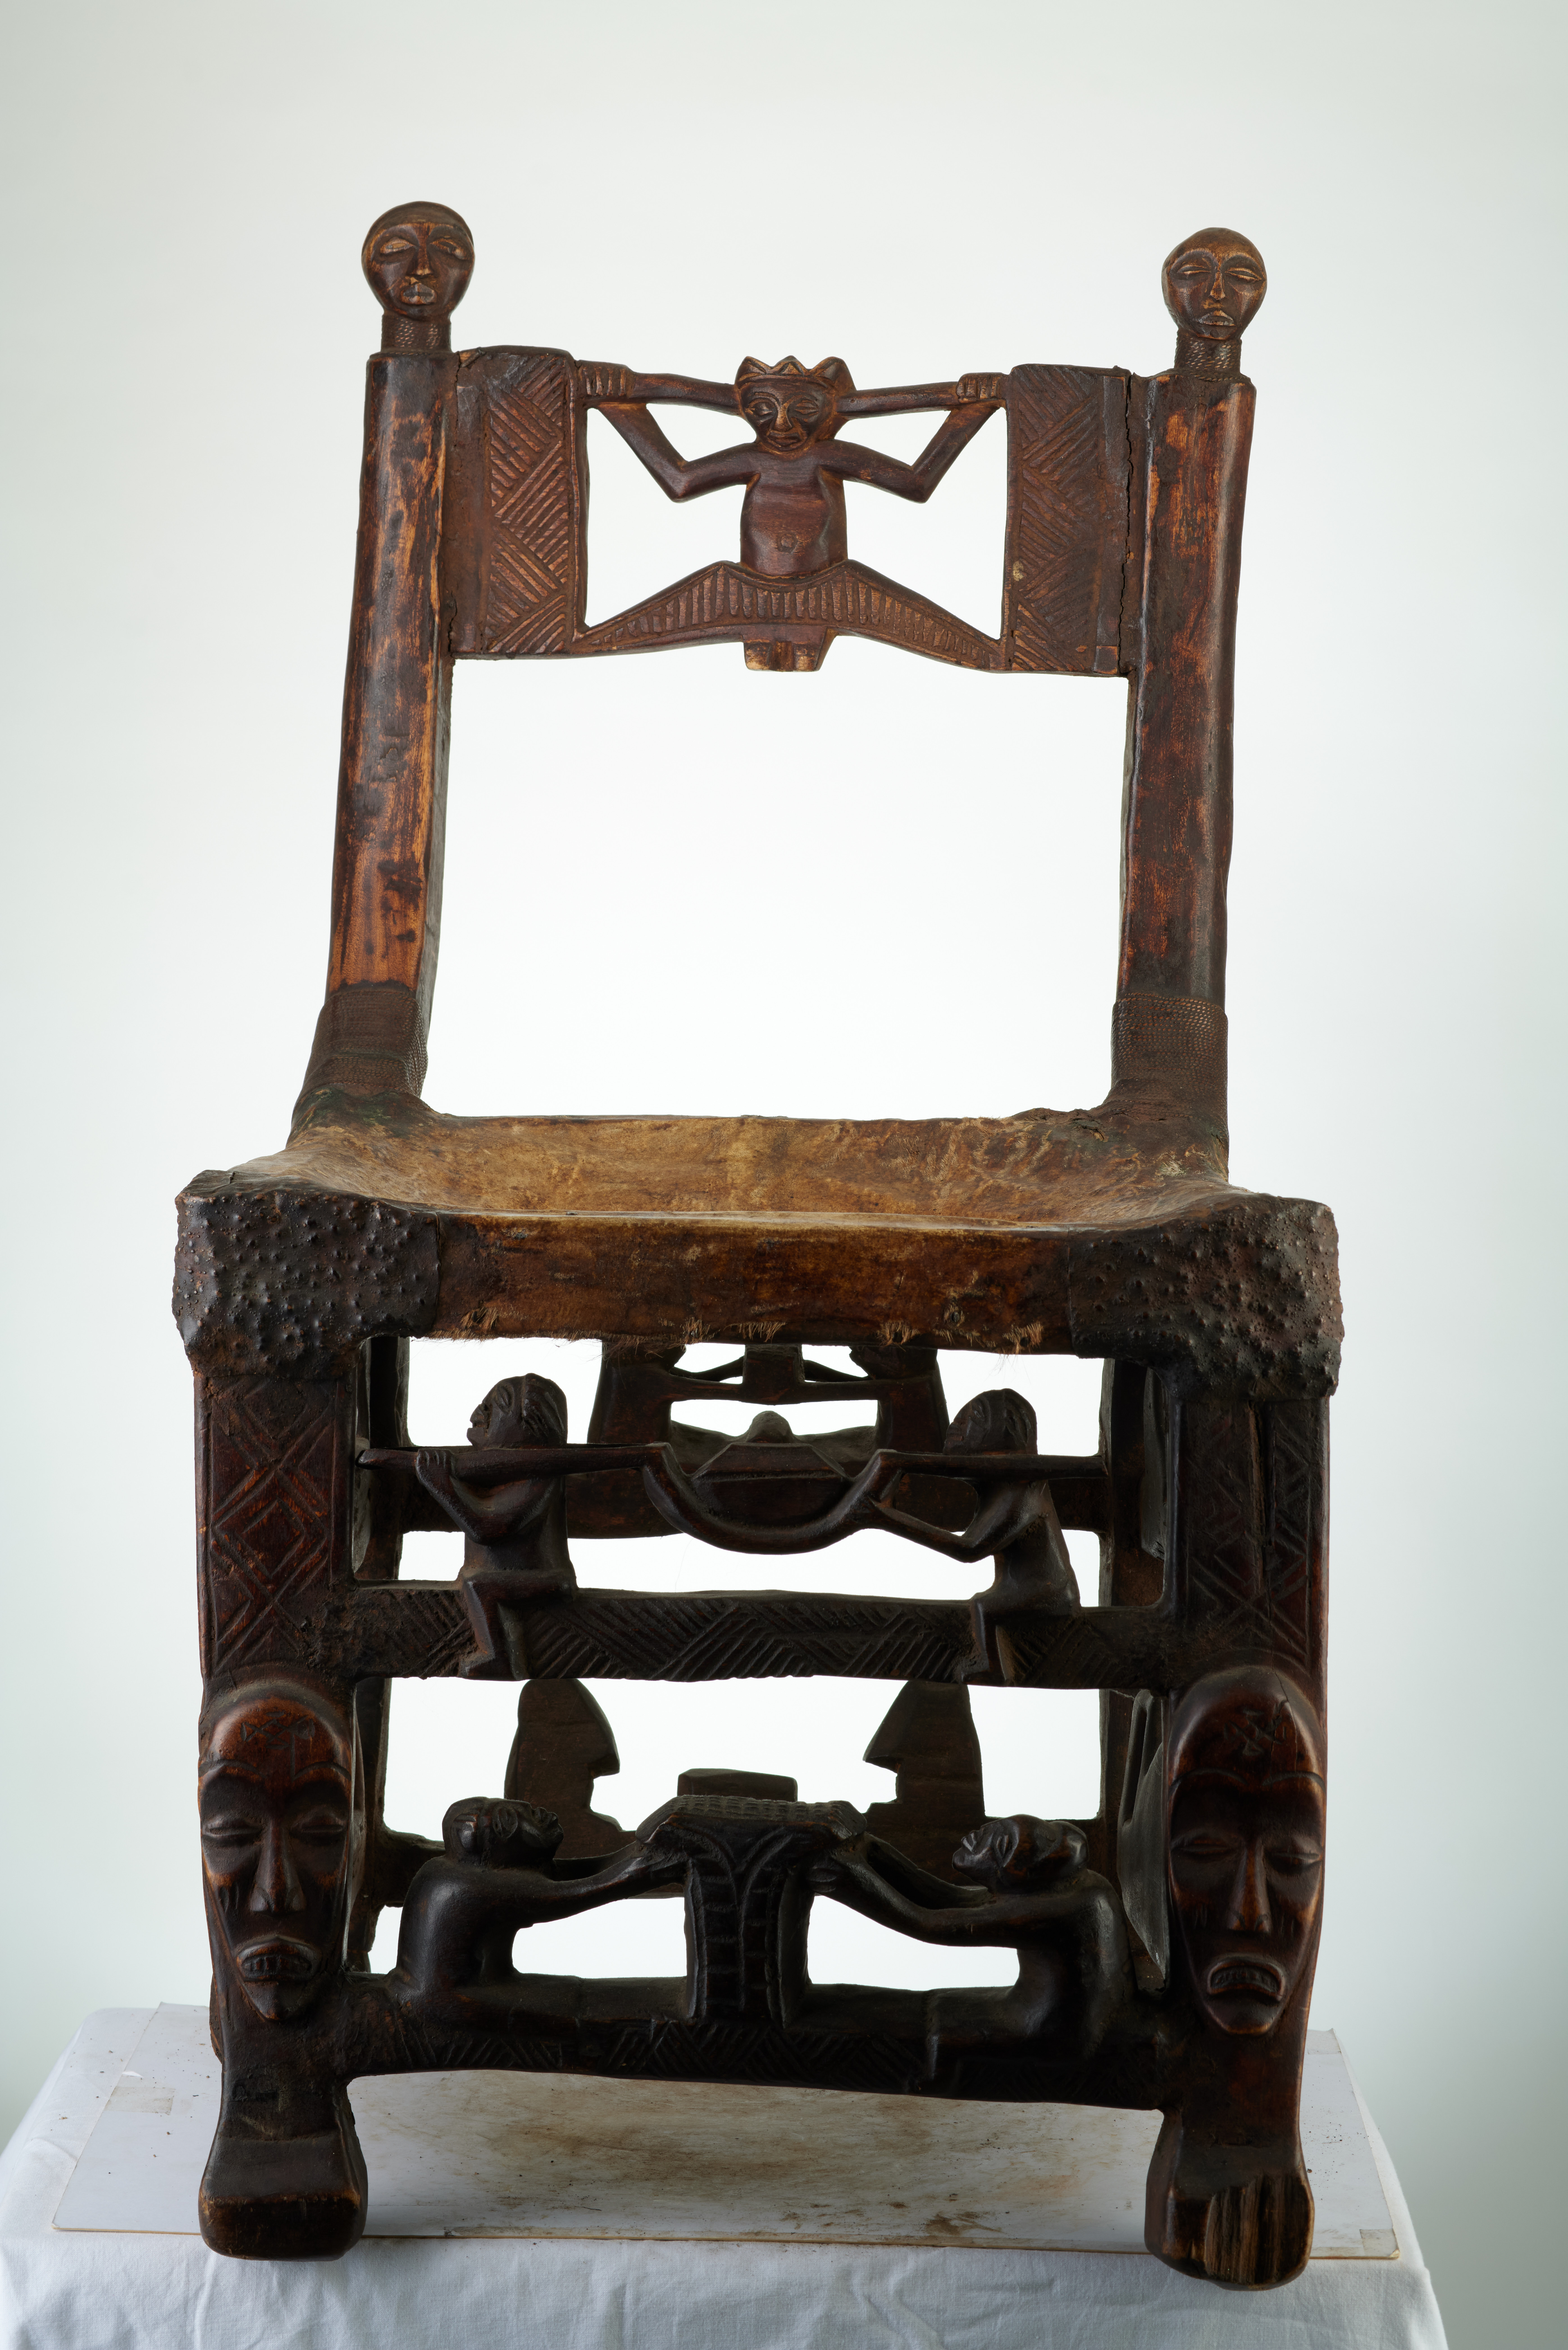 TCHOKWE (chaise), d`afrique : rep.dem.Congo, statuette TCHOKWE (chaise), masque ancien africain TCHOKWE (chaise), art du rep.dem.Congo - Art Africain, collection privées Belgique. Statue africaine de la tribu des TCHOKWE (chaise), provenant du rep.dem.Congo, 1869:Tres vieille chaise Tchokwe datant du 19eme sc.Elle est recouverte d